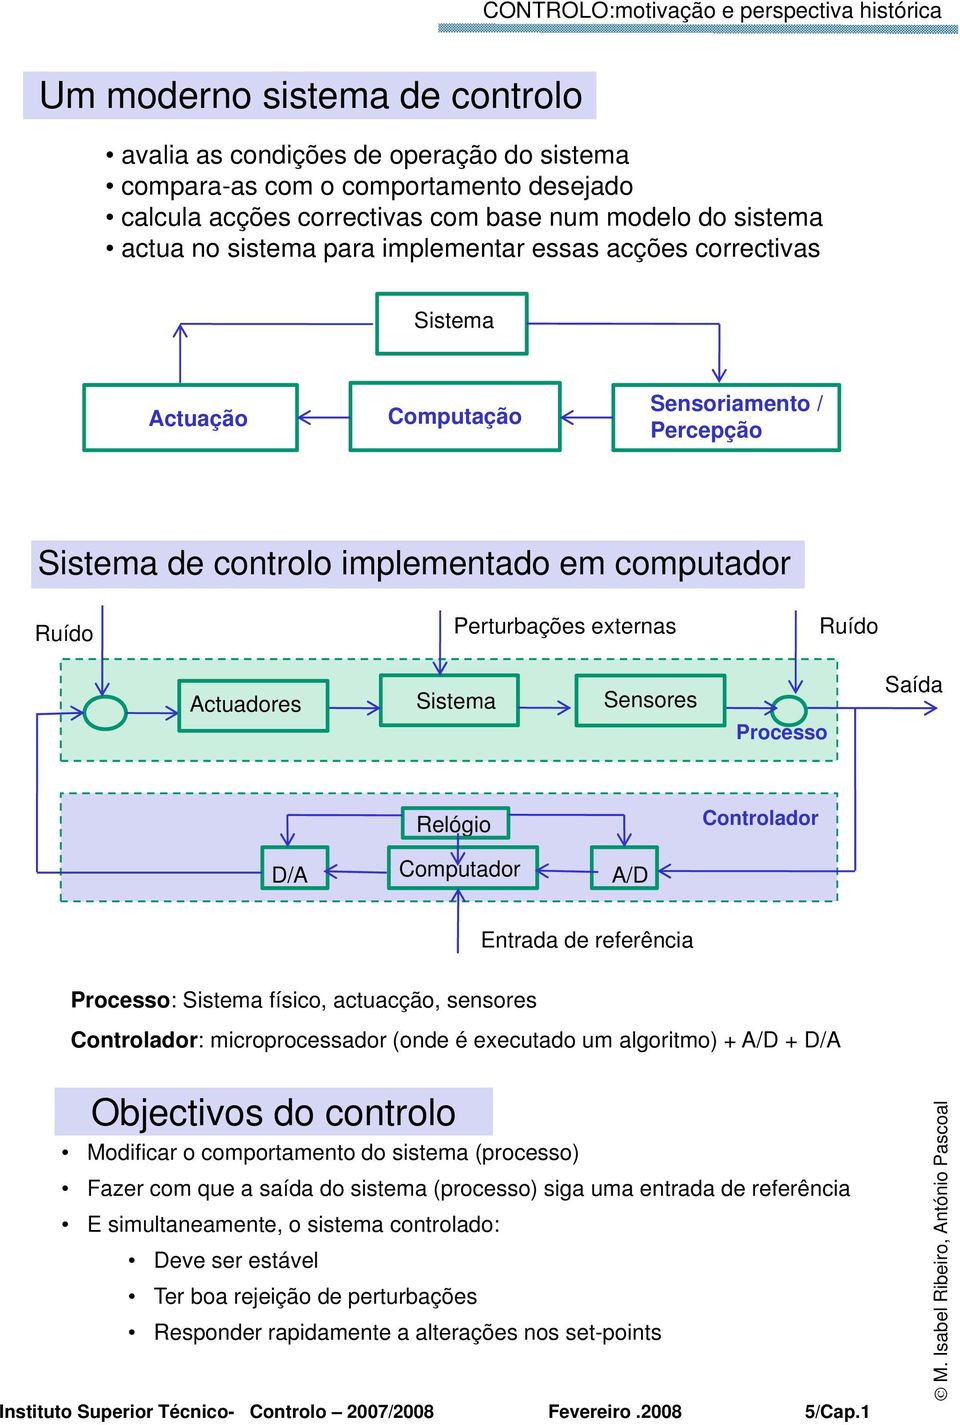 Saída Processo Relógio Controlador D/A Computador A/D Entrada de referência Processo: Sistema físico, actuacção, sensores Controlador: microprocessador (onde é executado um algoritmo) + A/D + D/A